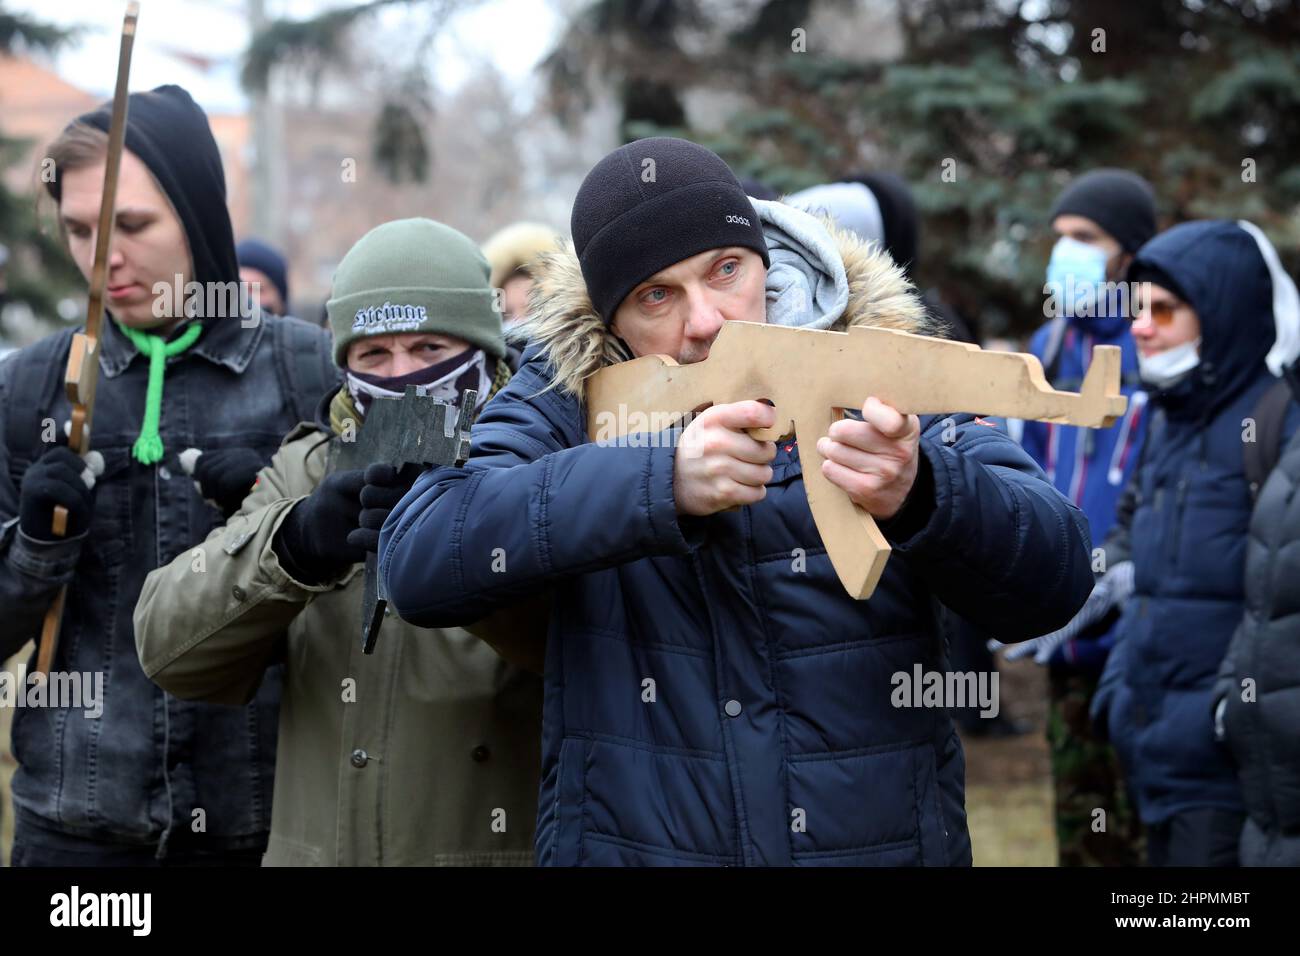 CHARKIW, UKRAINE - 19. FEBRUAR 2022 - Ein Mann zeigt während der vom Asow-Regimentvete gegebenen territorialen Verteidigungsübung auf Zivilisten einen Ausschnitt eines Gewehr Stockfoto